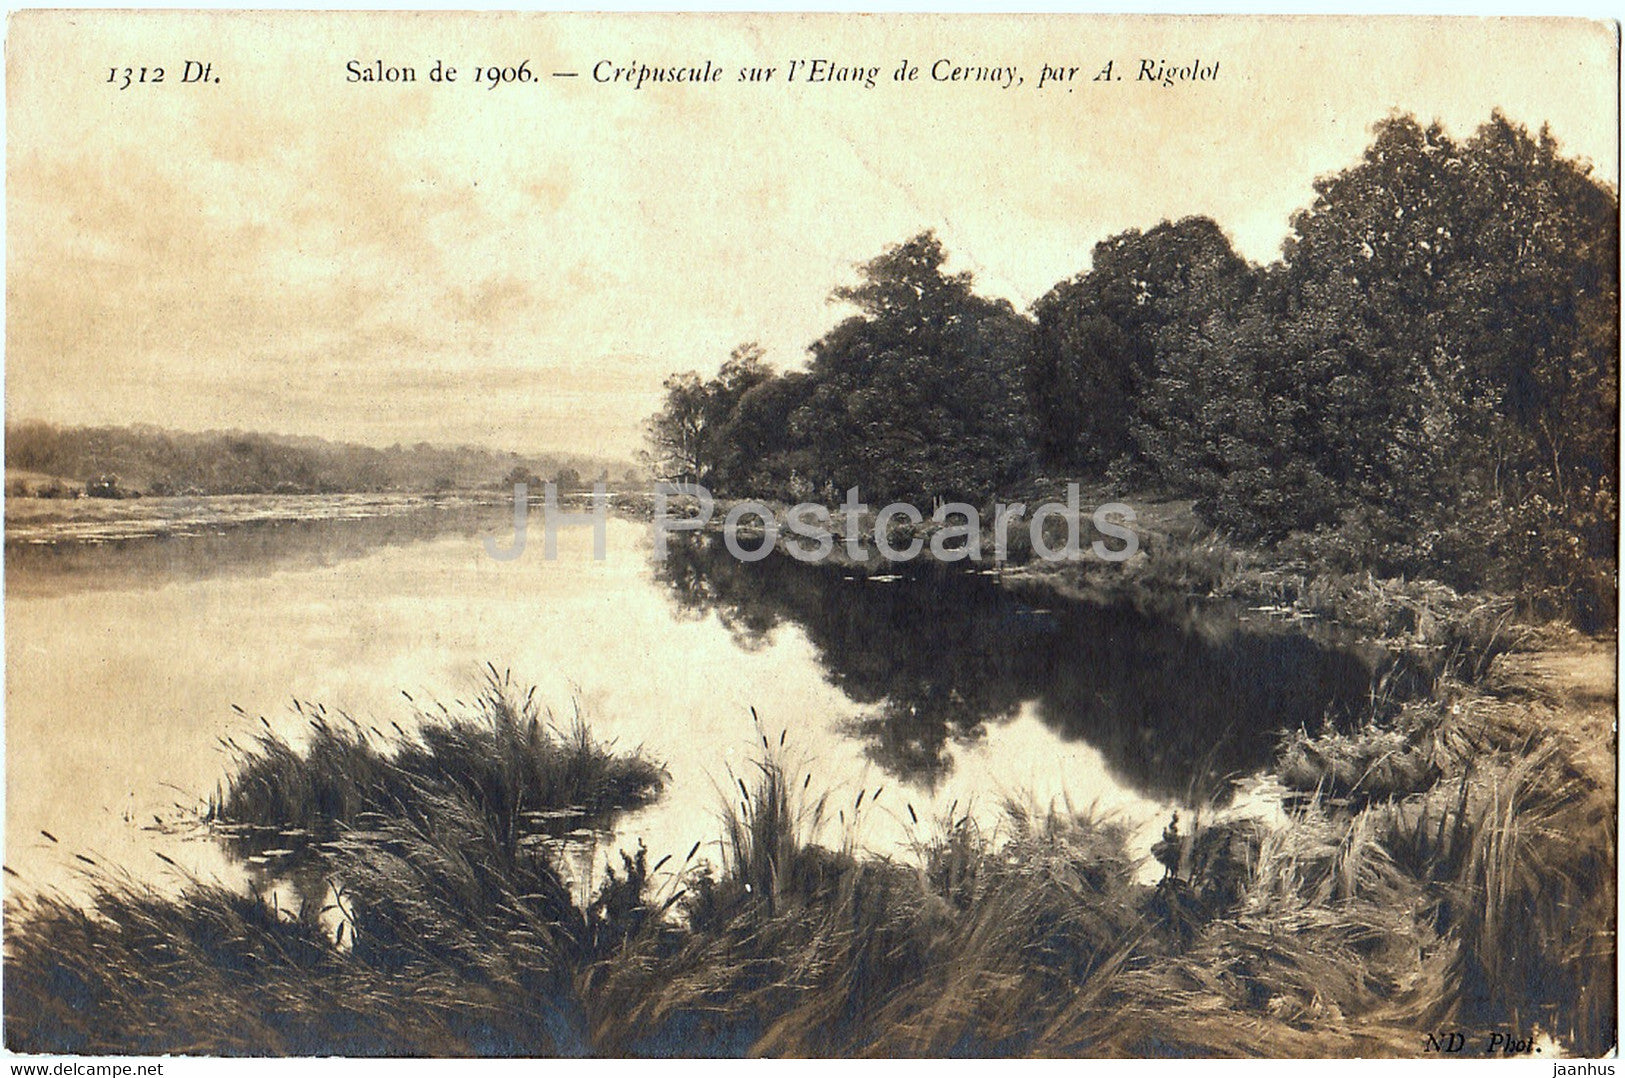 painting by A. Rigolot - Crepuscule sur l'Etang de Cernay - Salon de 1906 - French art - old postcard - France - unused - JH Postcards